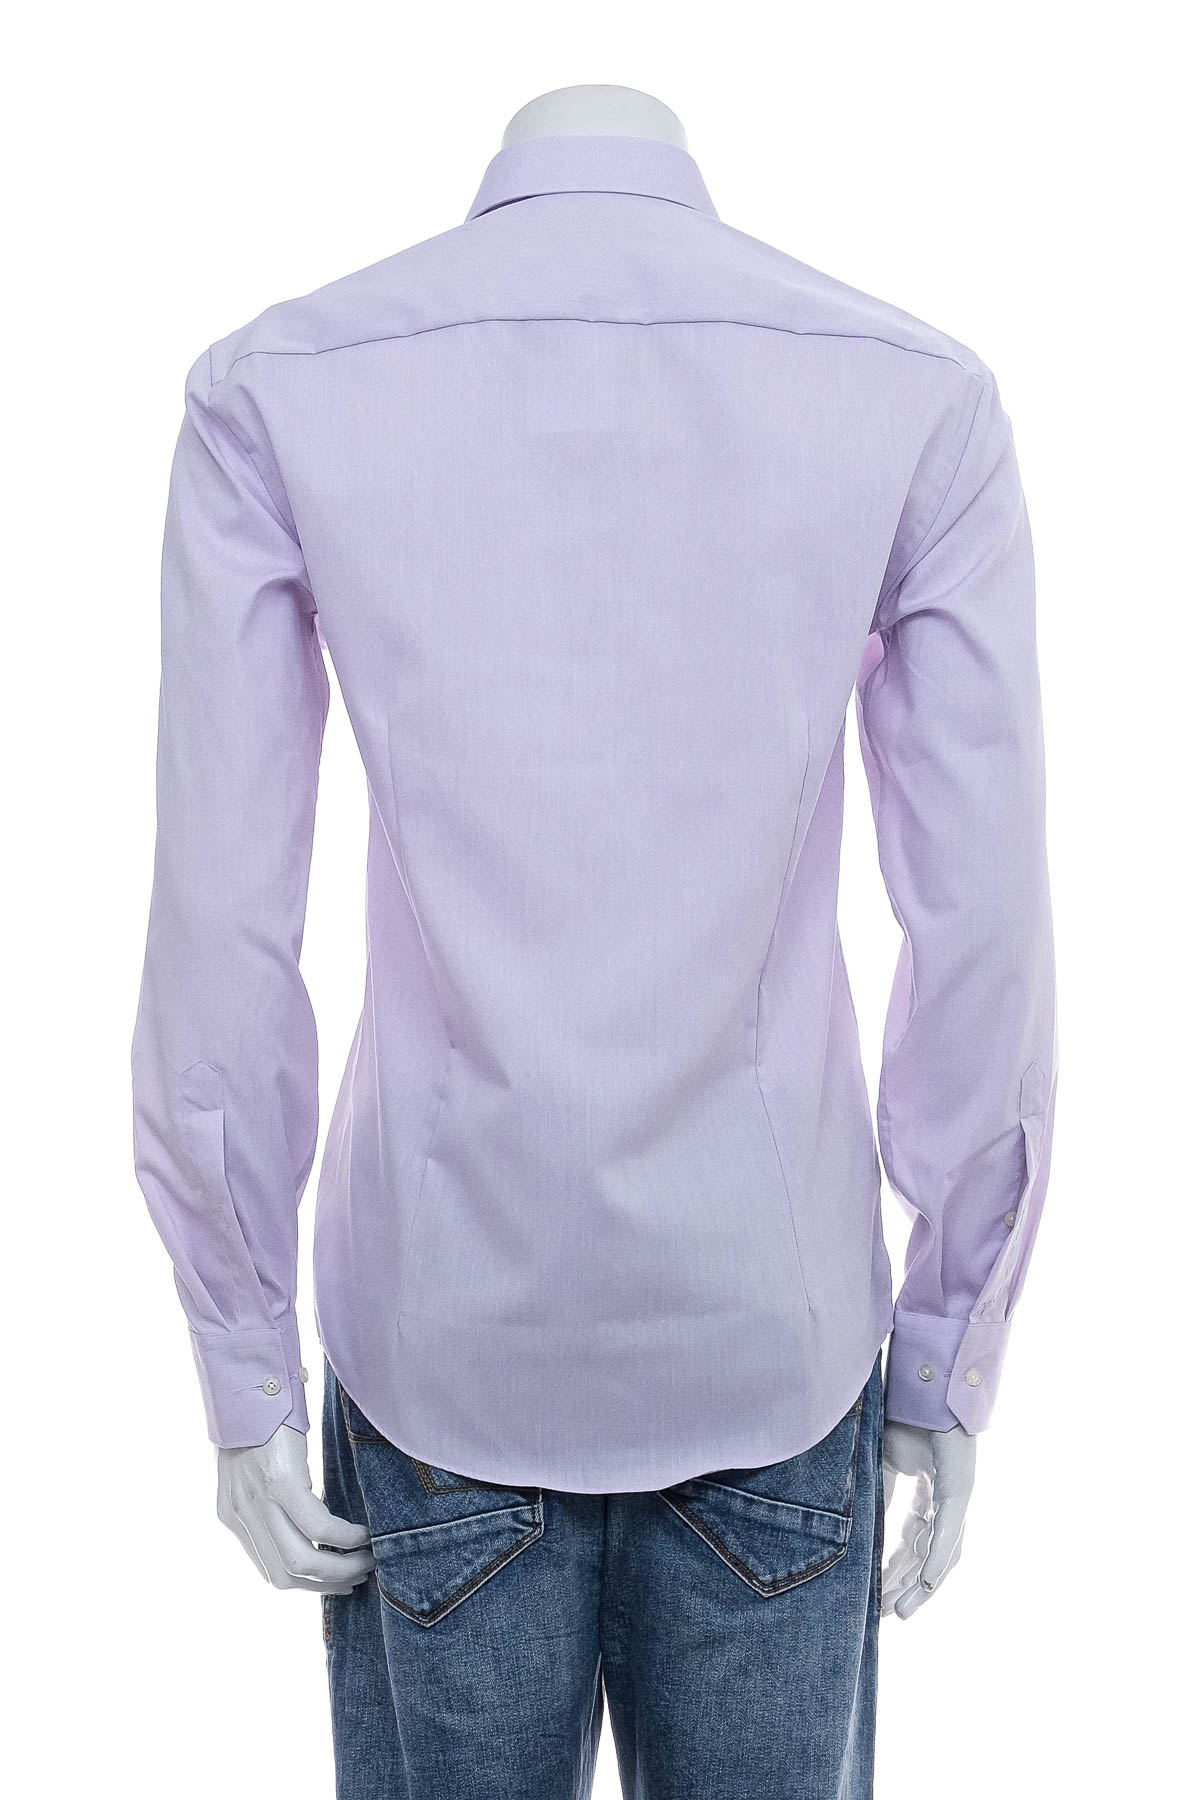 Ανδρικό πουκάμισο - Venti - 1